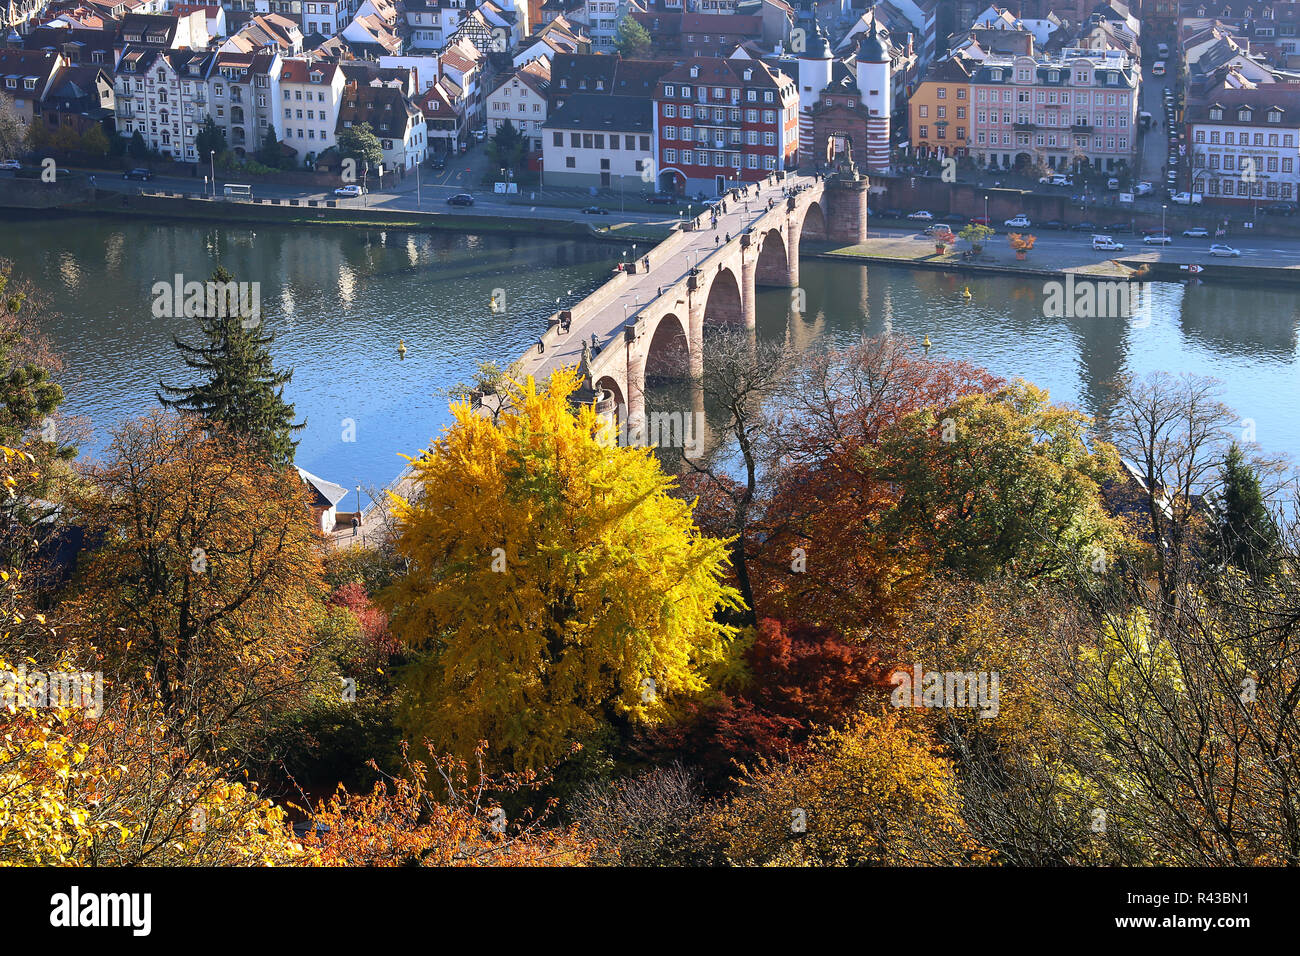 karl theodor bridge over the river neckar in heidelberg in autumn 2015 Stock Photo